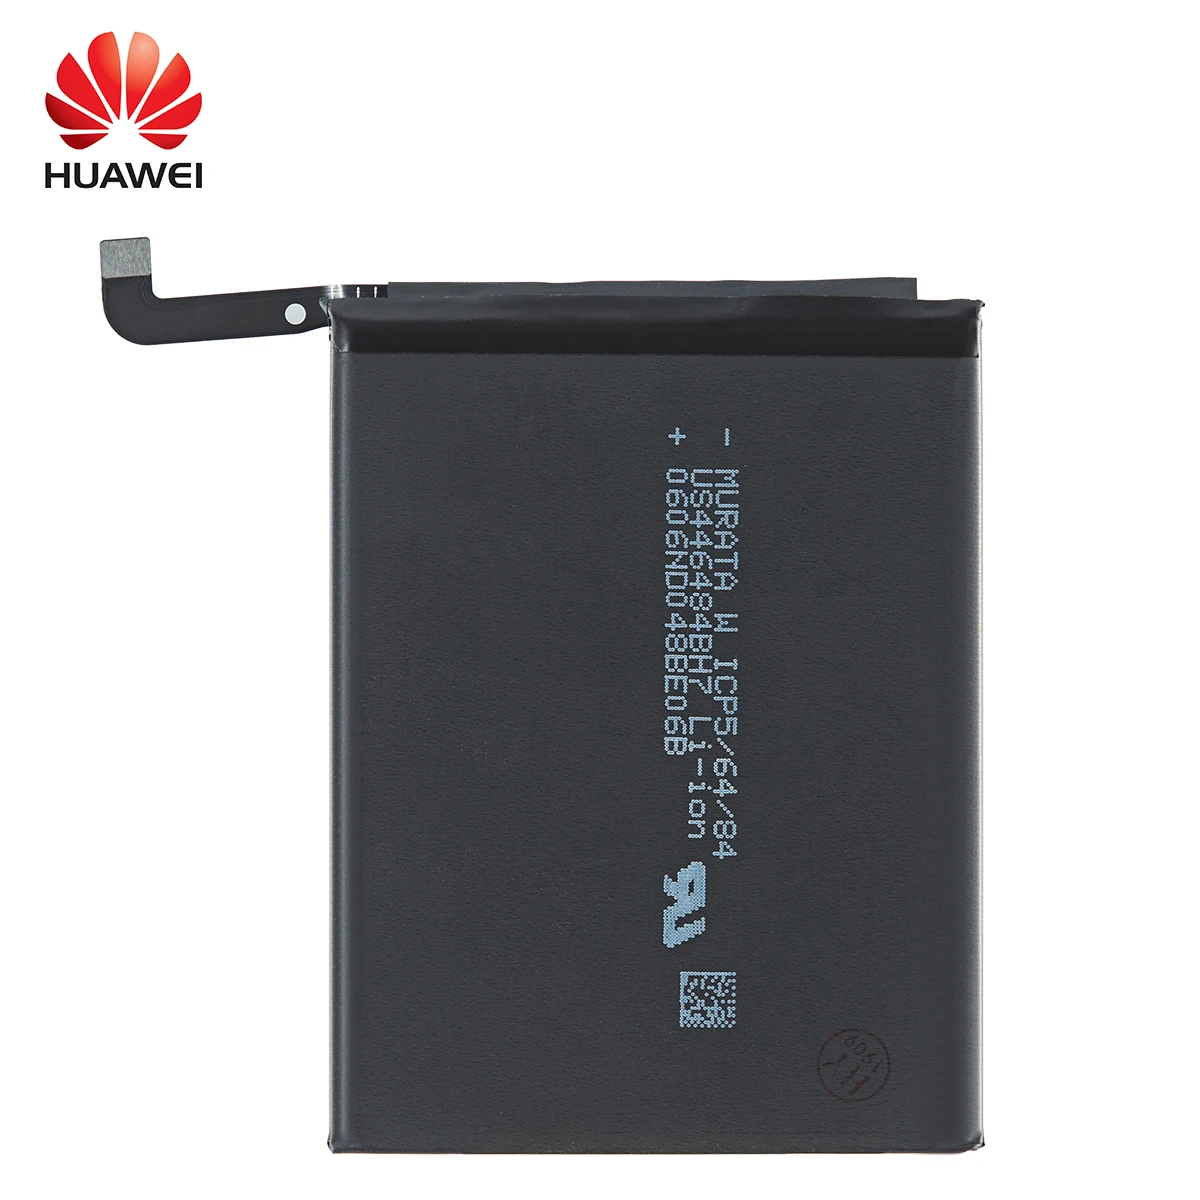 הואה-ווי 100% Orginal HB436486ECW 4000 מיליאמפר סוללה עבור Huawei Mate 10 חבר 10 Pro /P20 Pro AL00 L09 L29 TL00 החלפת הסוללות - 3